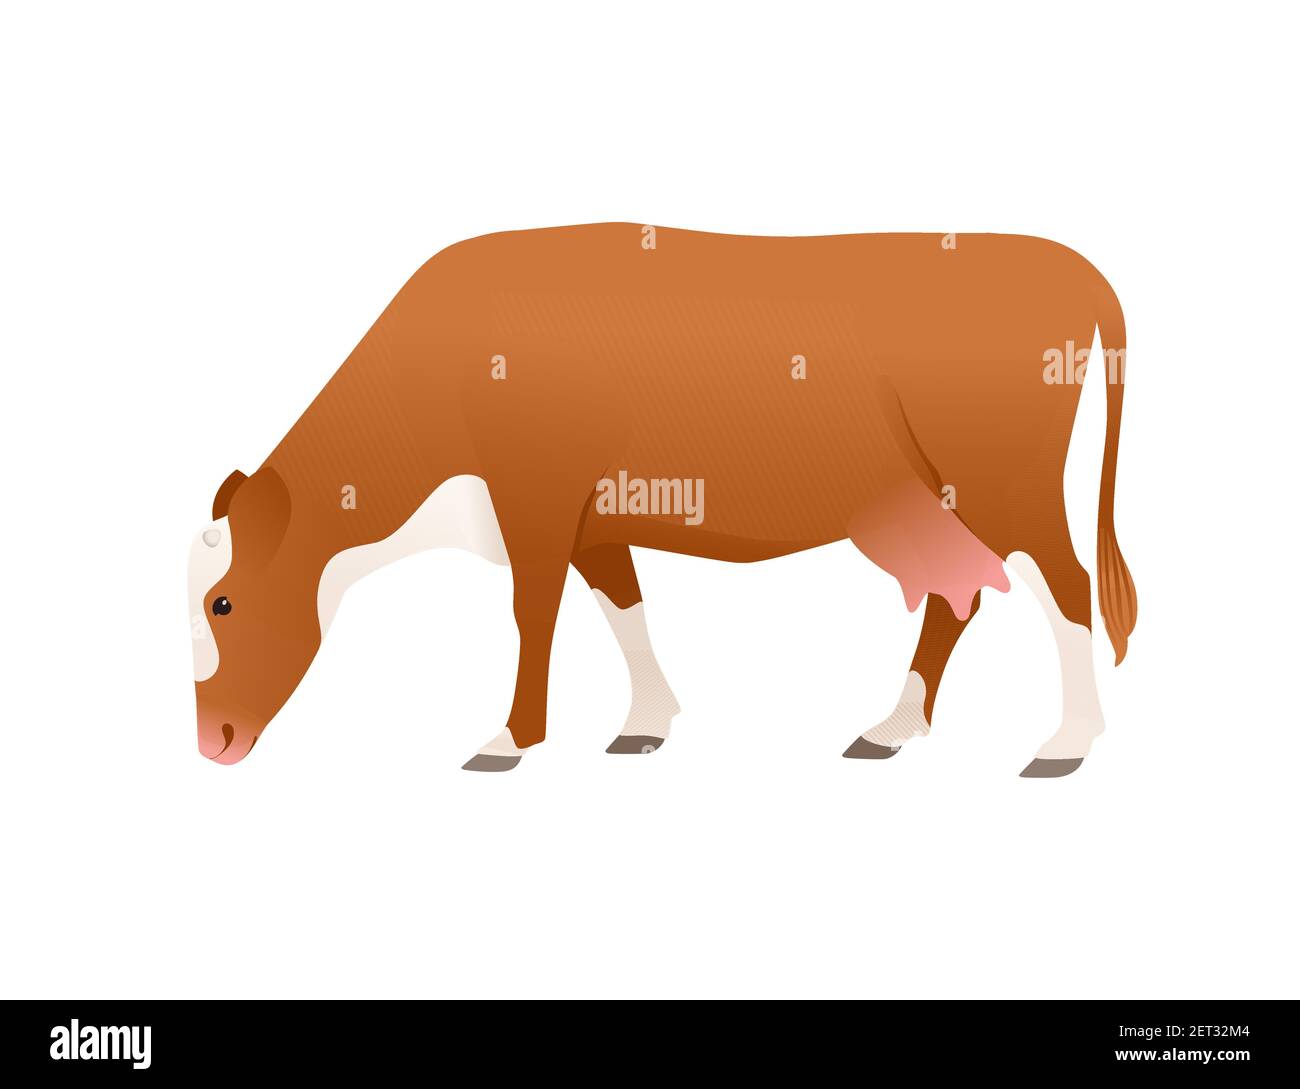 Bétail laitier vache simmental tacheté animal mammifère domestique dessin animé illustration vectorielle sur fond blanc Illustration de Vecteur